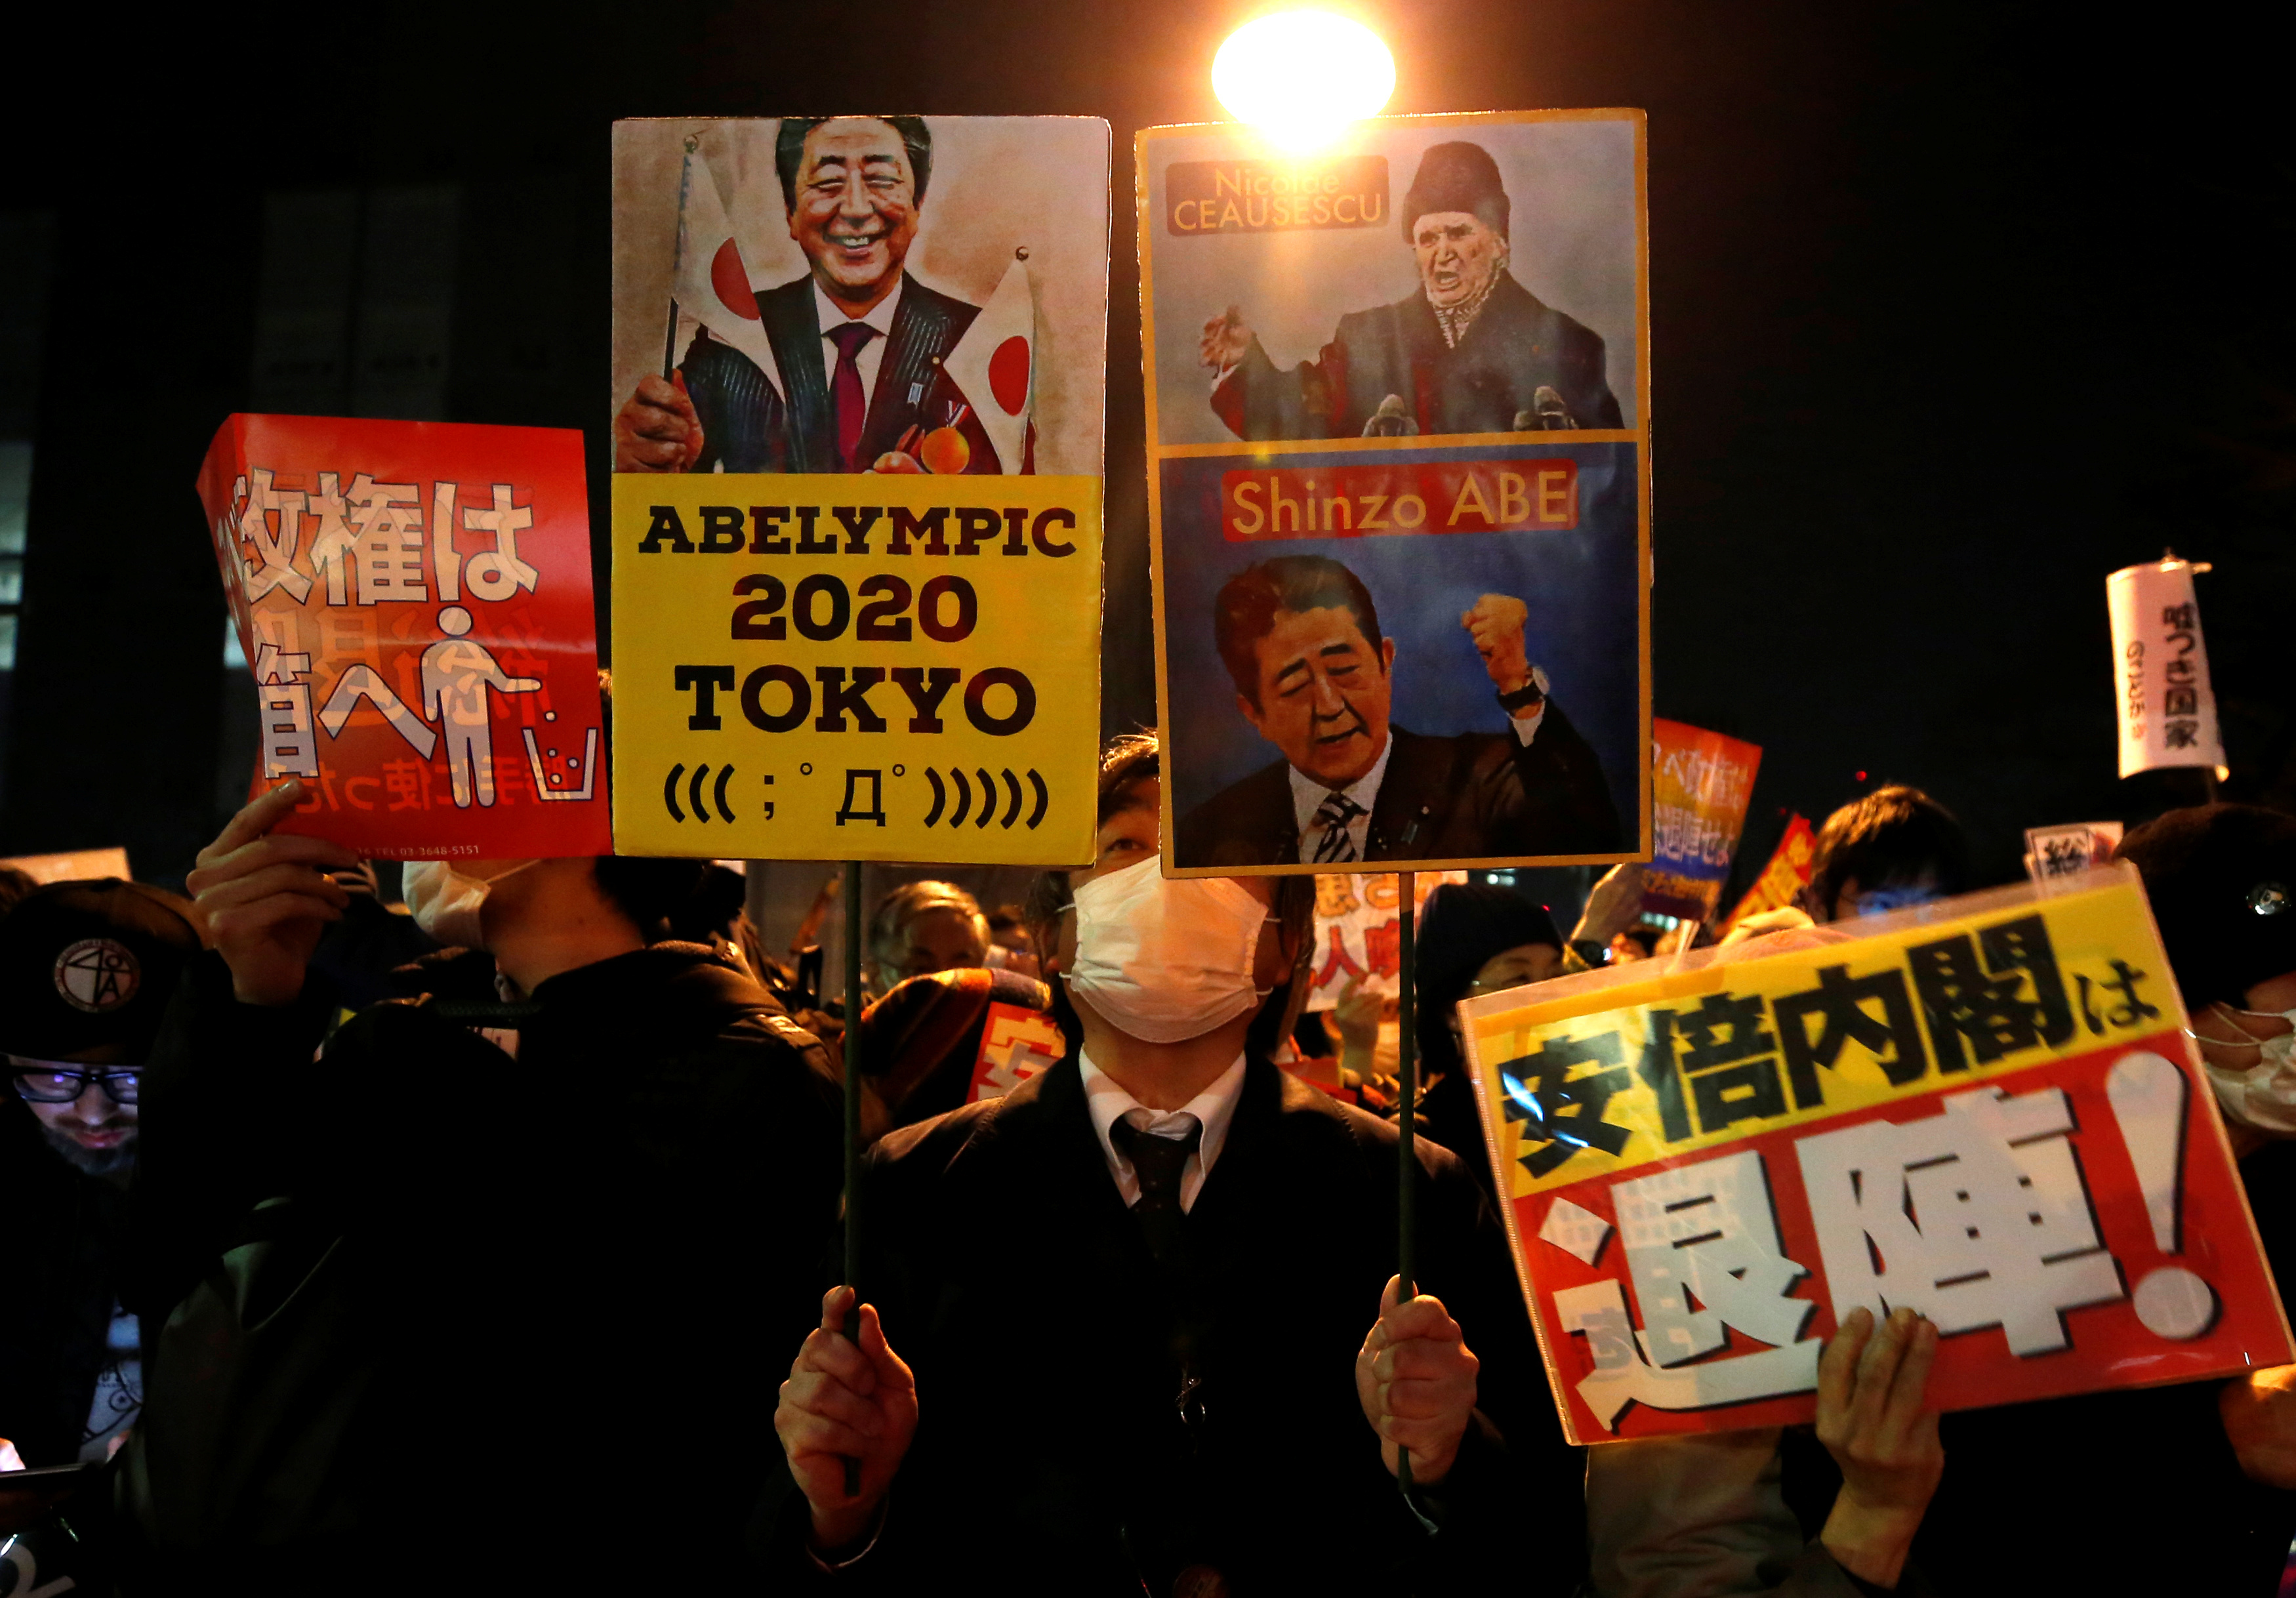 تظاهرات تطالب باستقالة رئيس الوزراء باليابان شينزو آبى